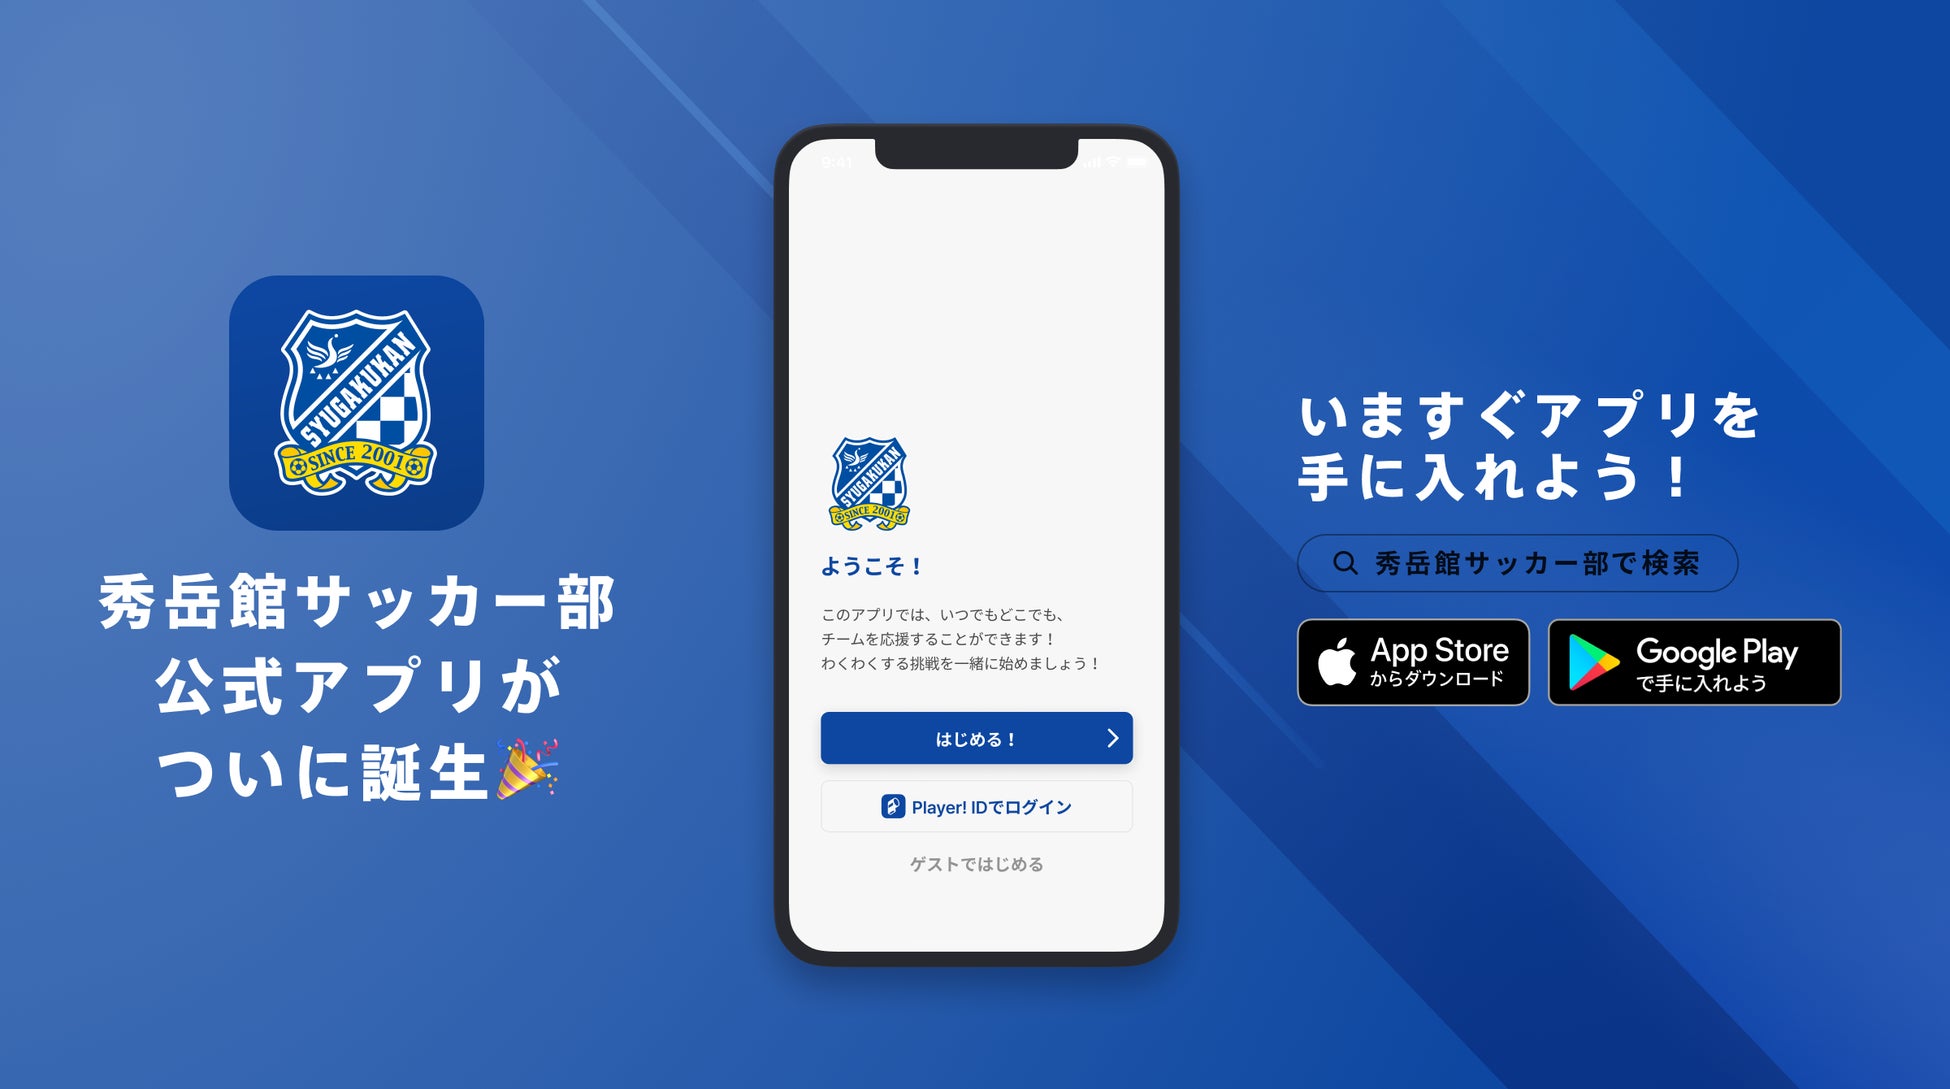 『記録より記憶に残る』サッカーを！熊本県の強豪、秀岳館高校サッカー部が公式アプリリリースのお知らせ